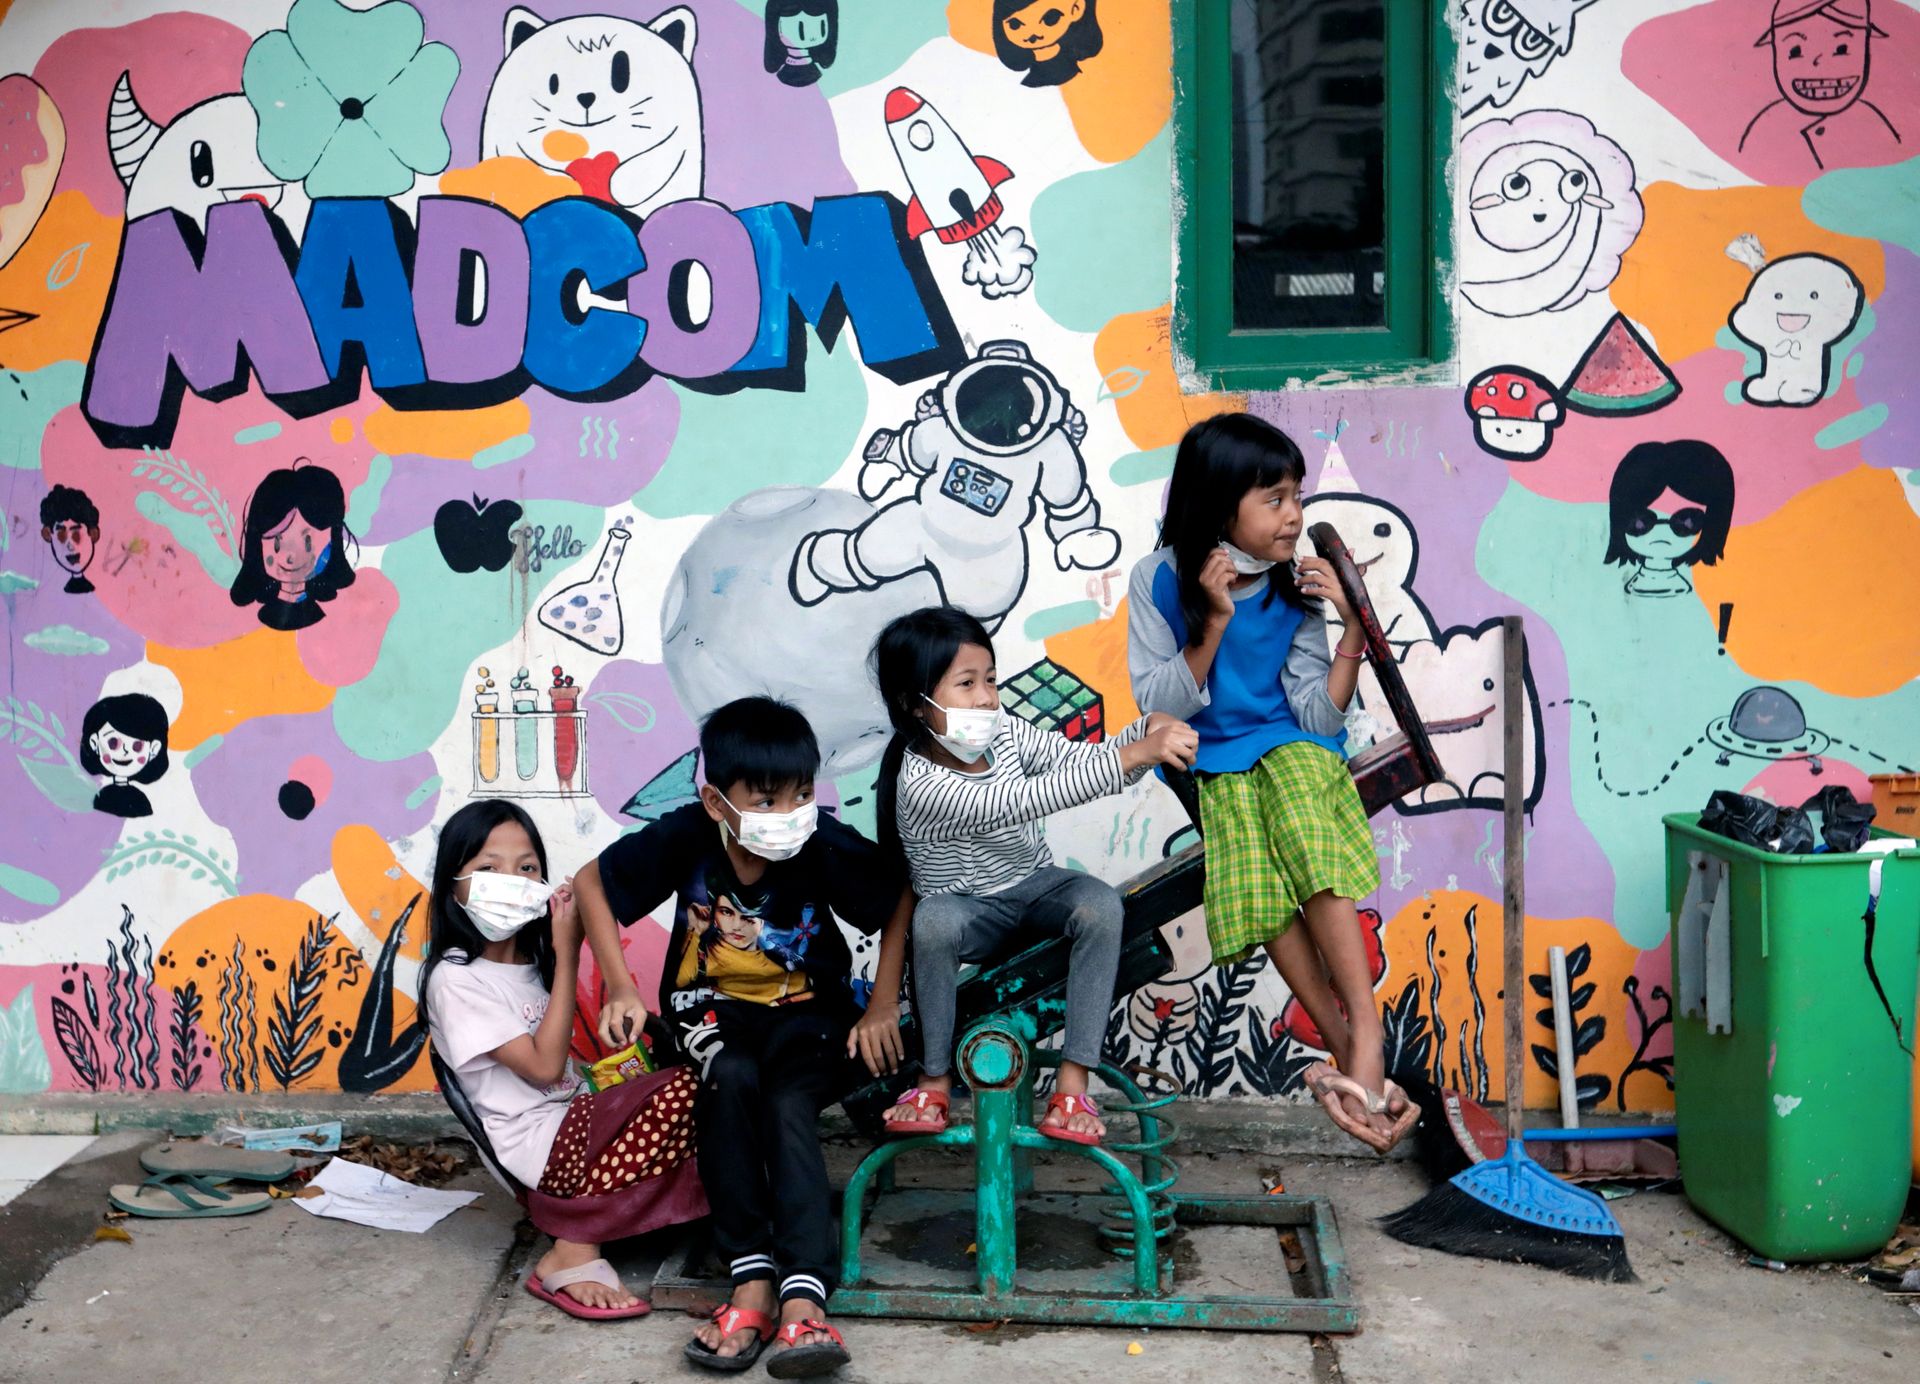 Fire barn med ansiktsmaske sitter på en dumphuske, foran en vegg med fargerik veggmaling av figurer, ansikter og påskriften "Madcon".